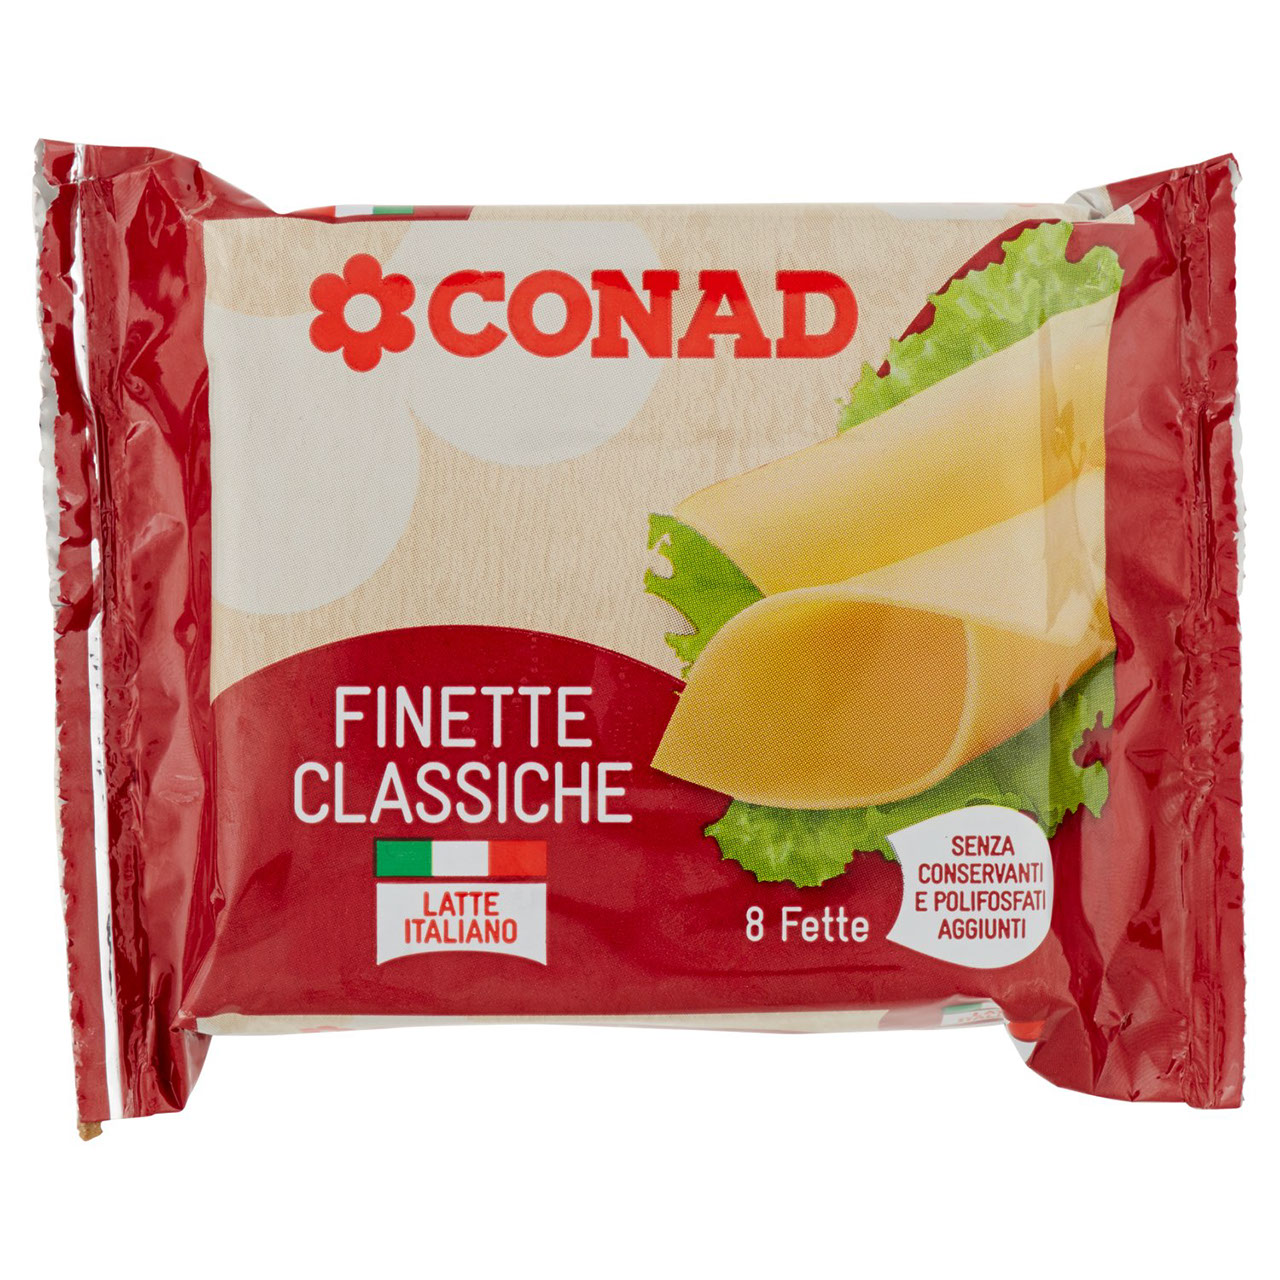 Finette Classiche 8 fette 200 g Conad